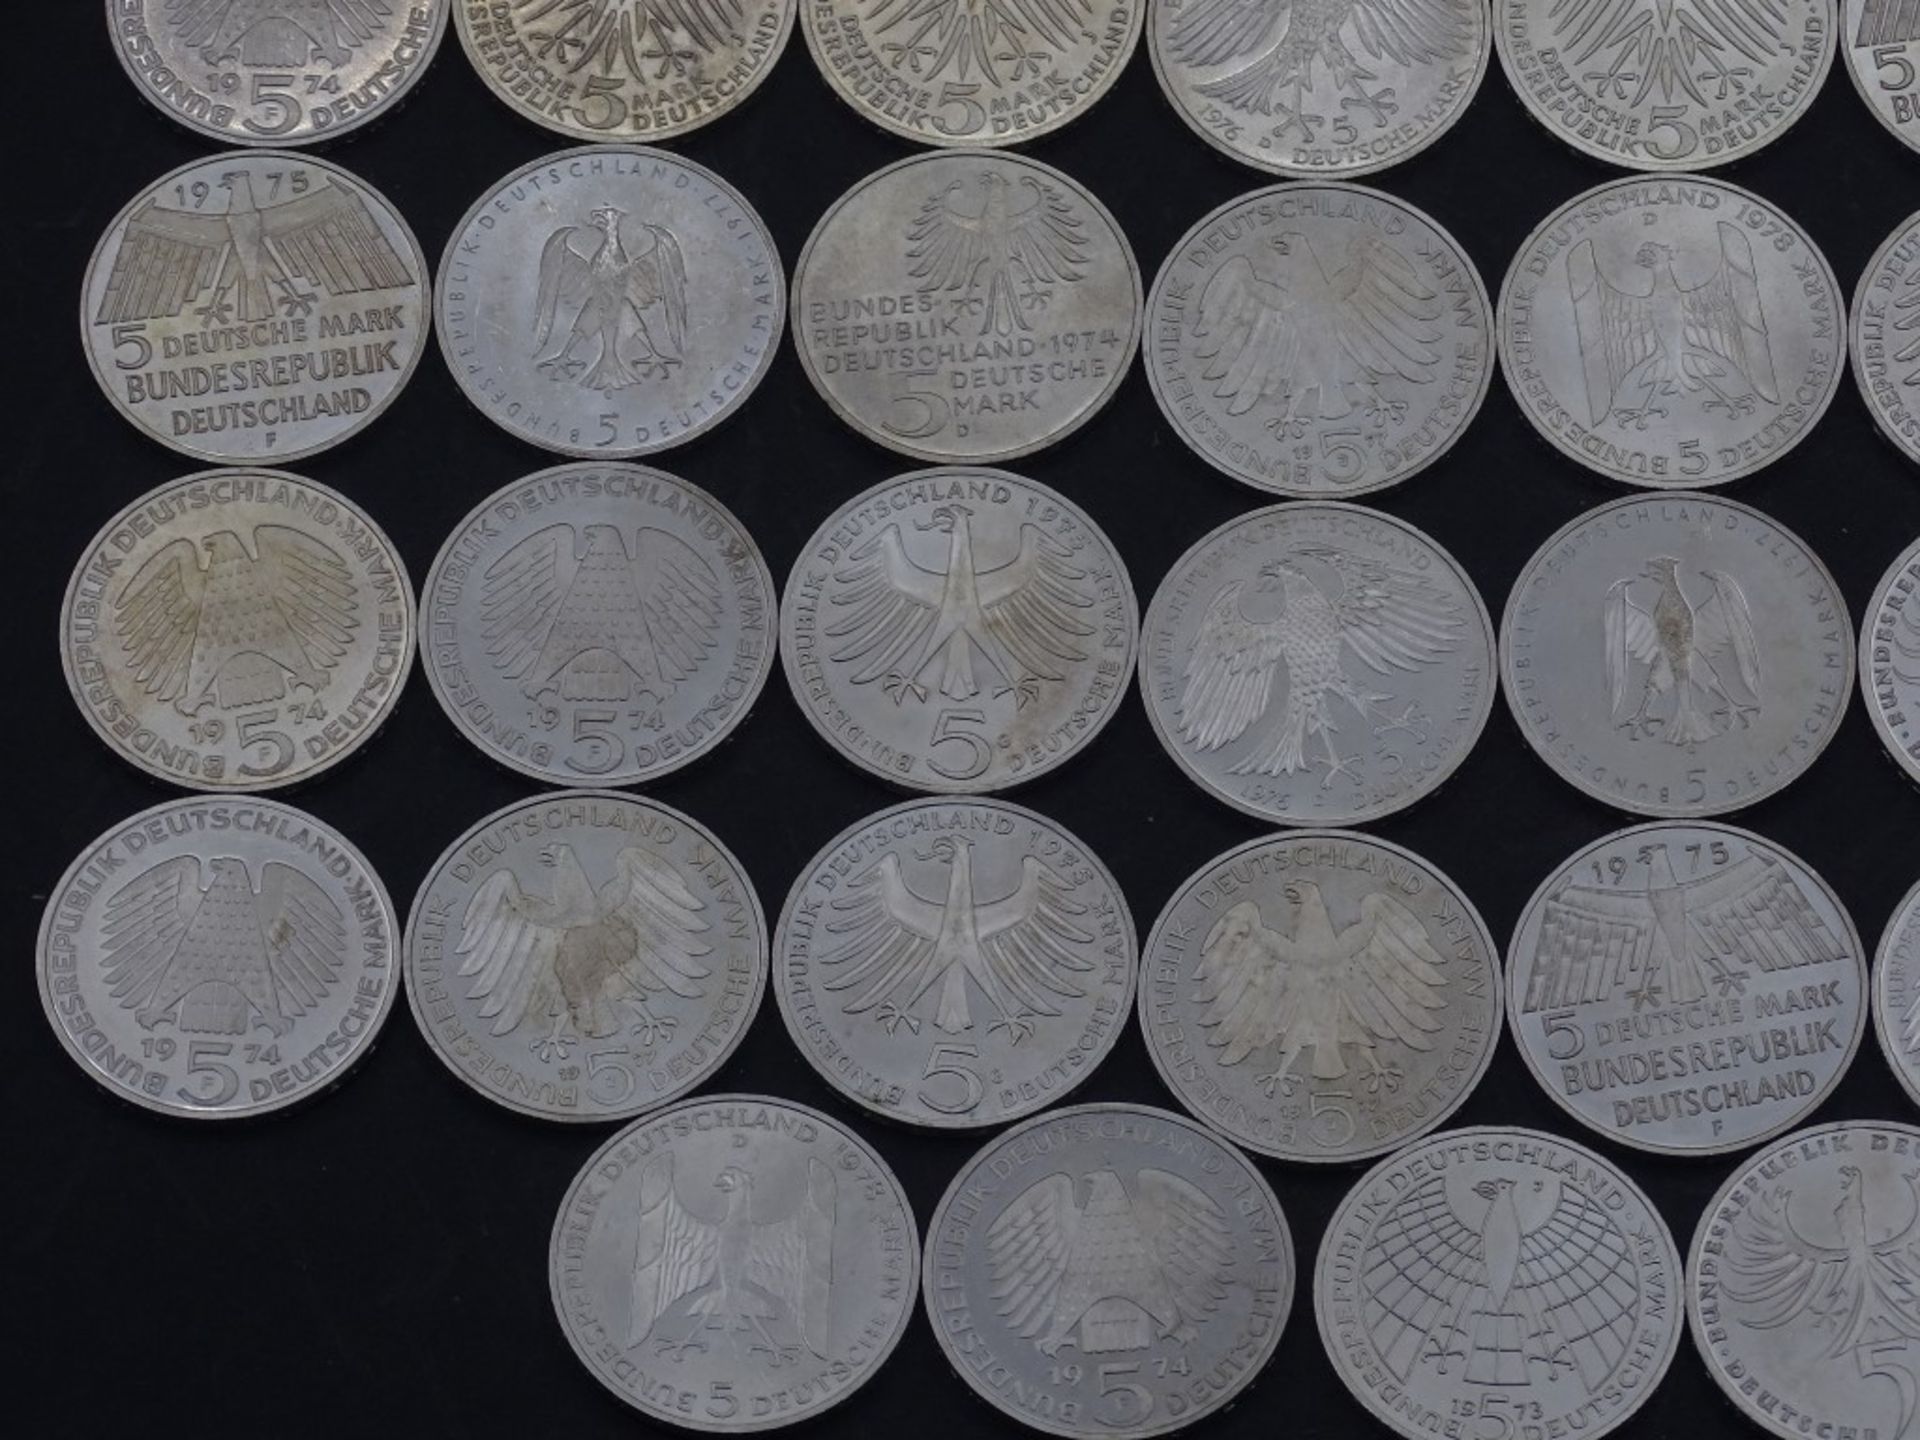 40x 5 DM Münzen,Silber,ges. 200 Deutsche Mar - Bild 5 aus 10